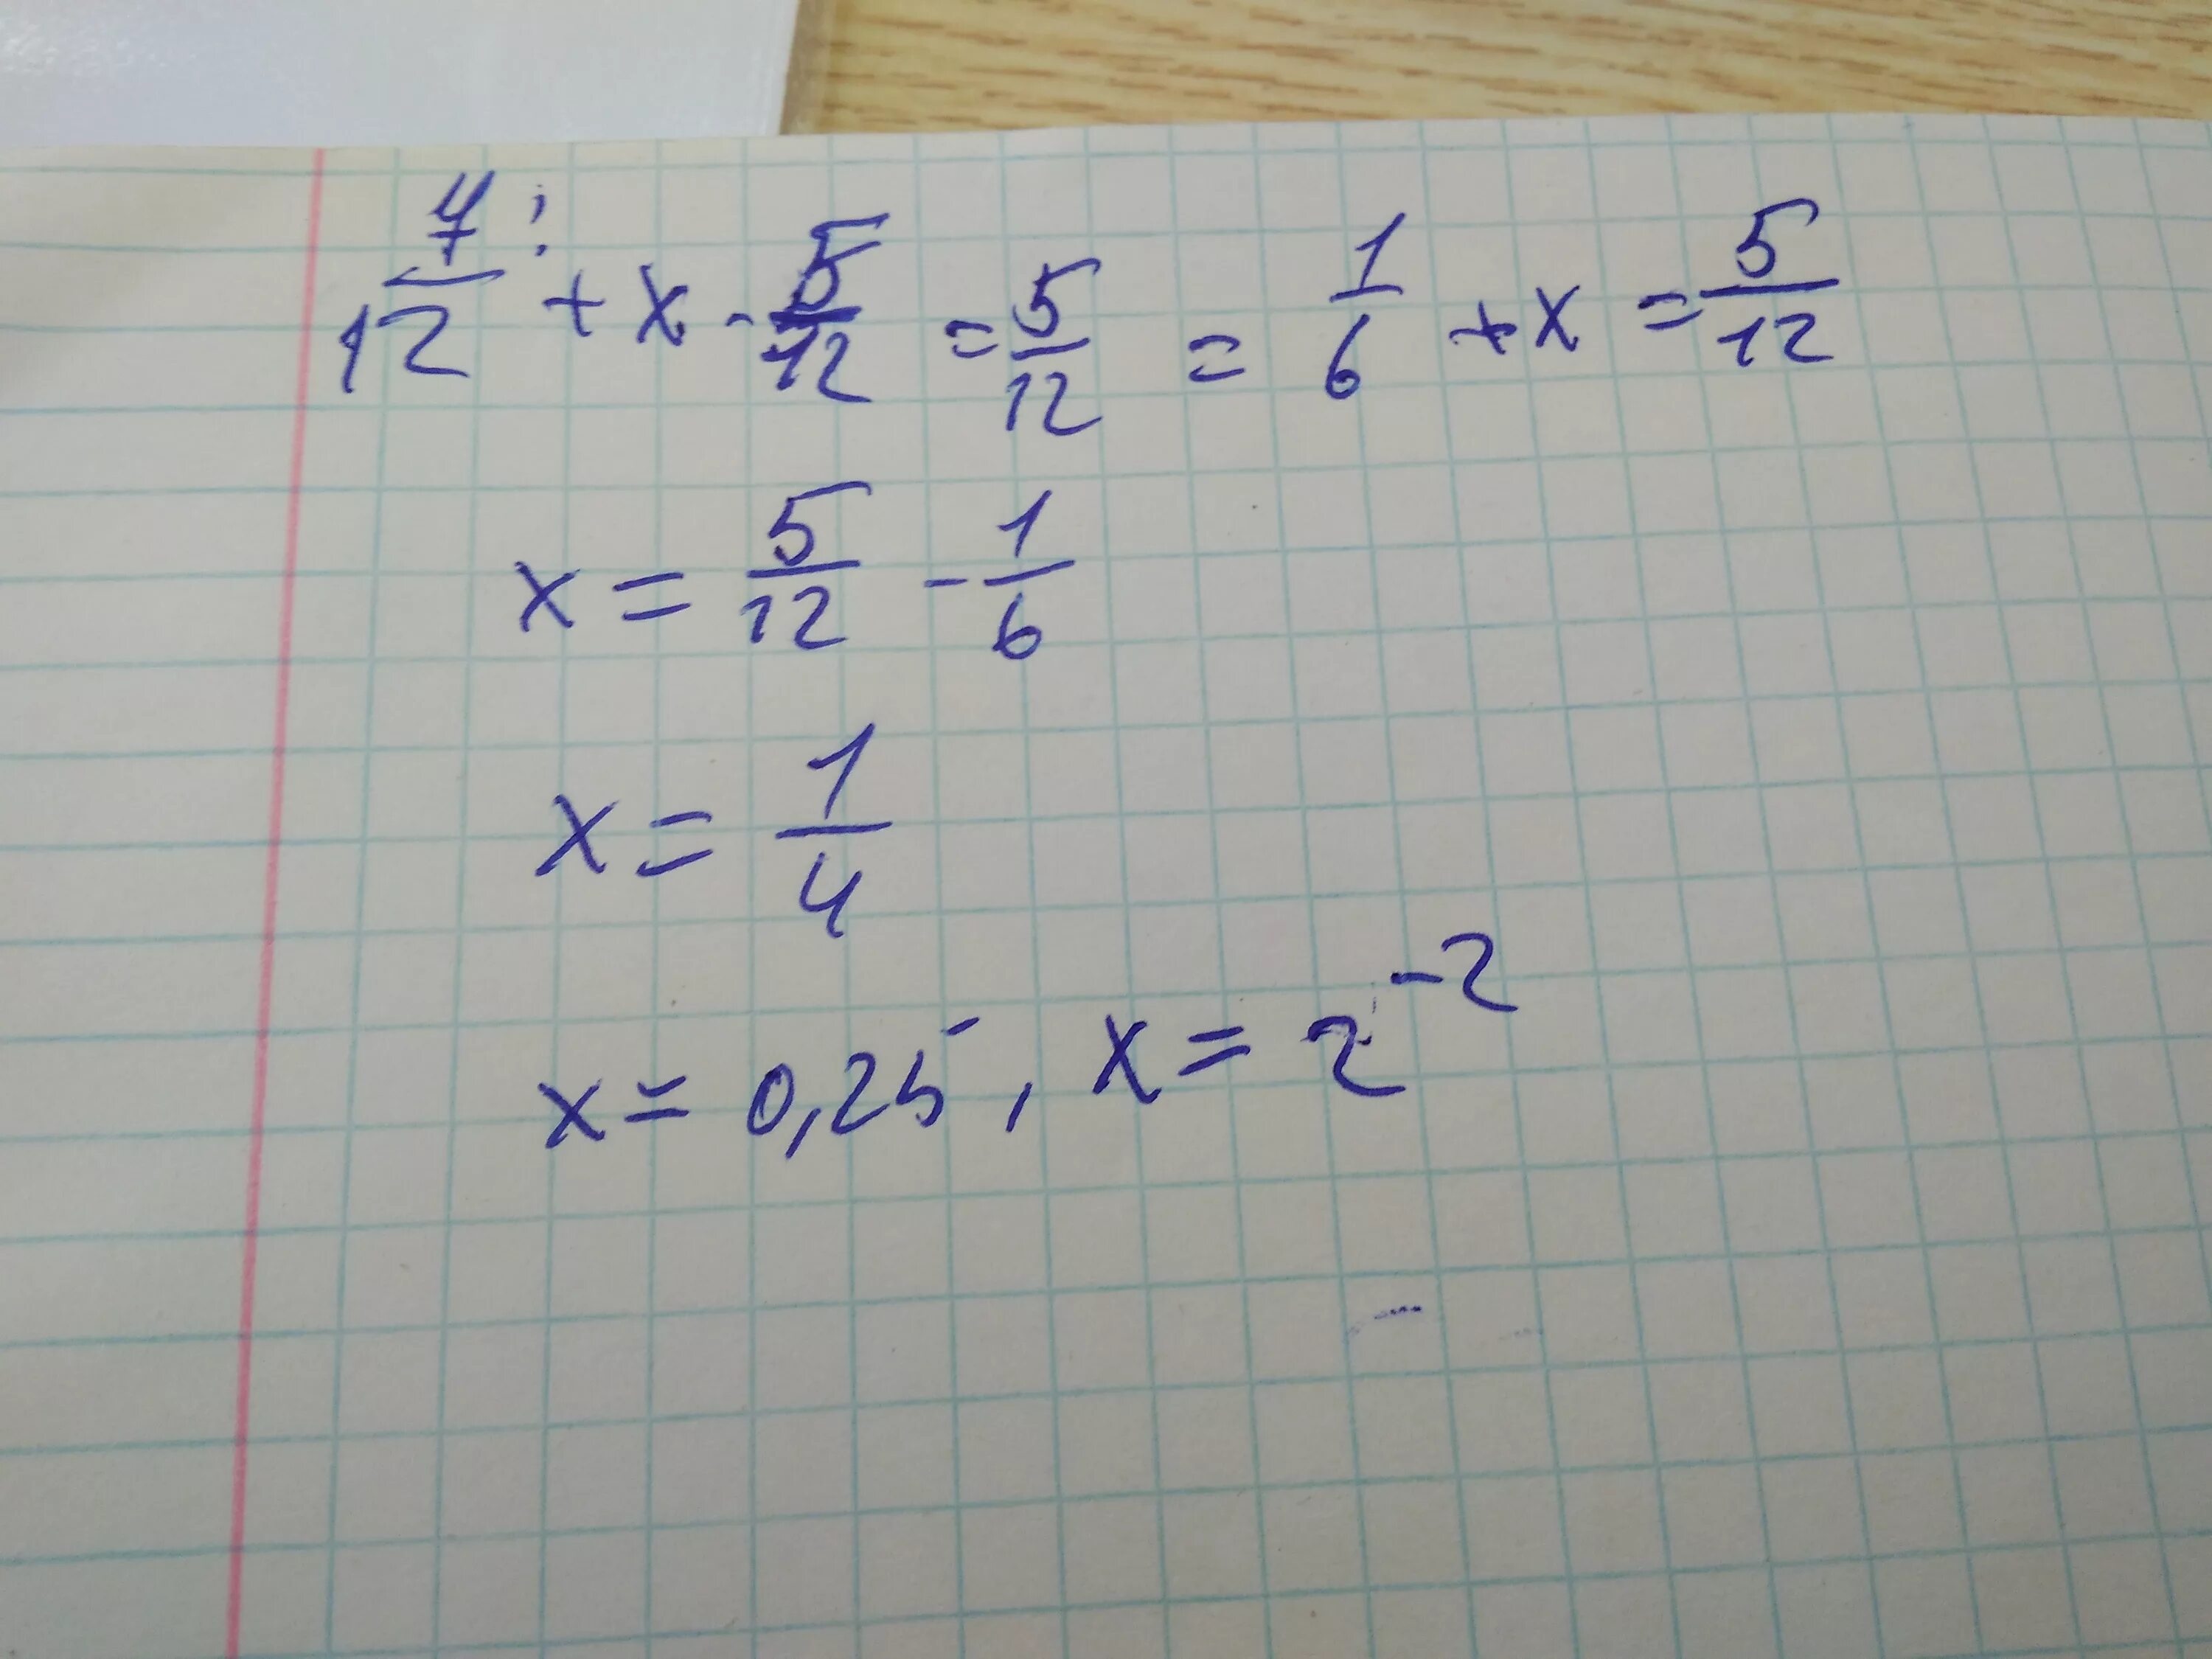 12/Х+5 -12/5. 5х=12. Х/5=5/12. 7/12+Х-5/12=5/12. Решите уравнение х 1 3 7 12